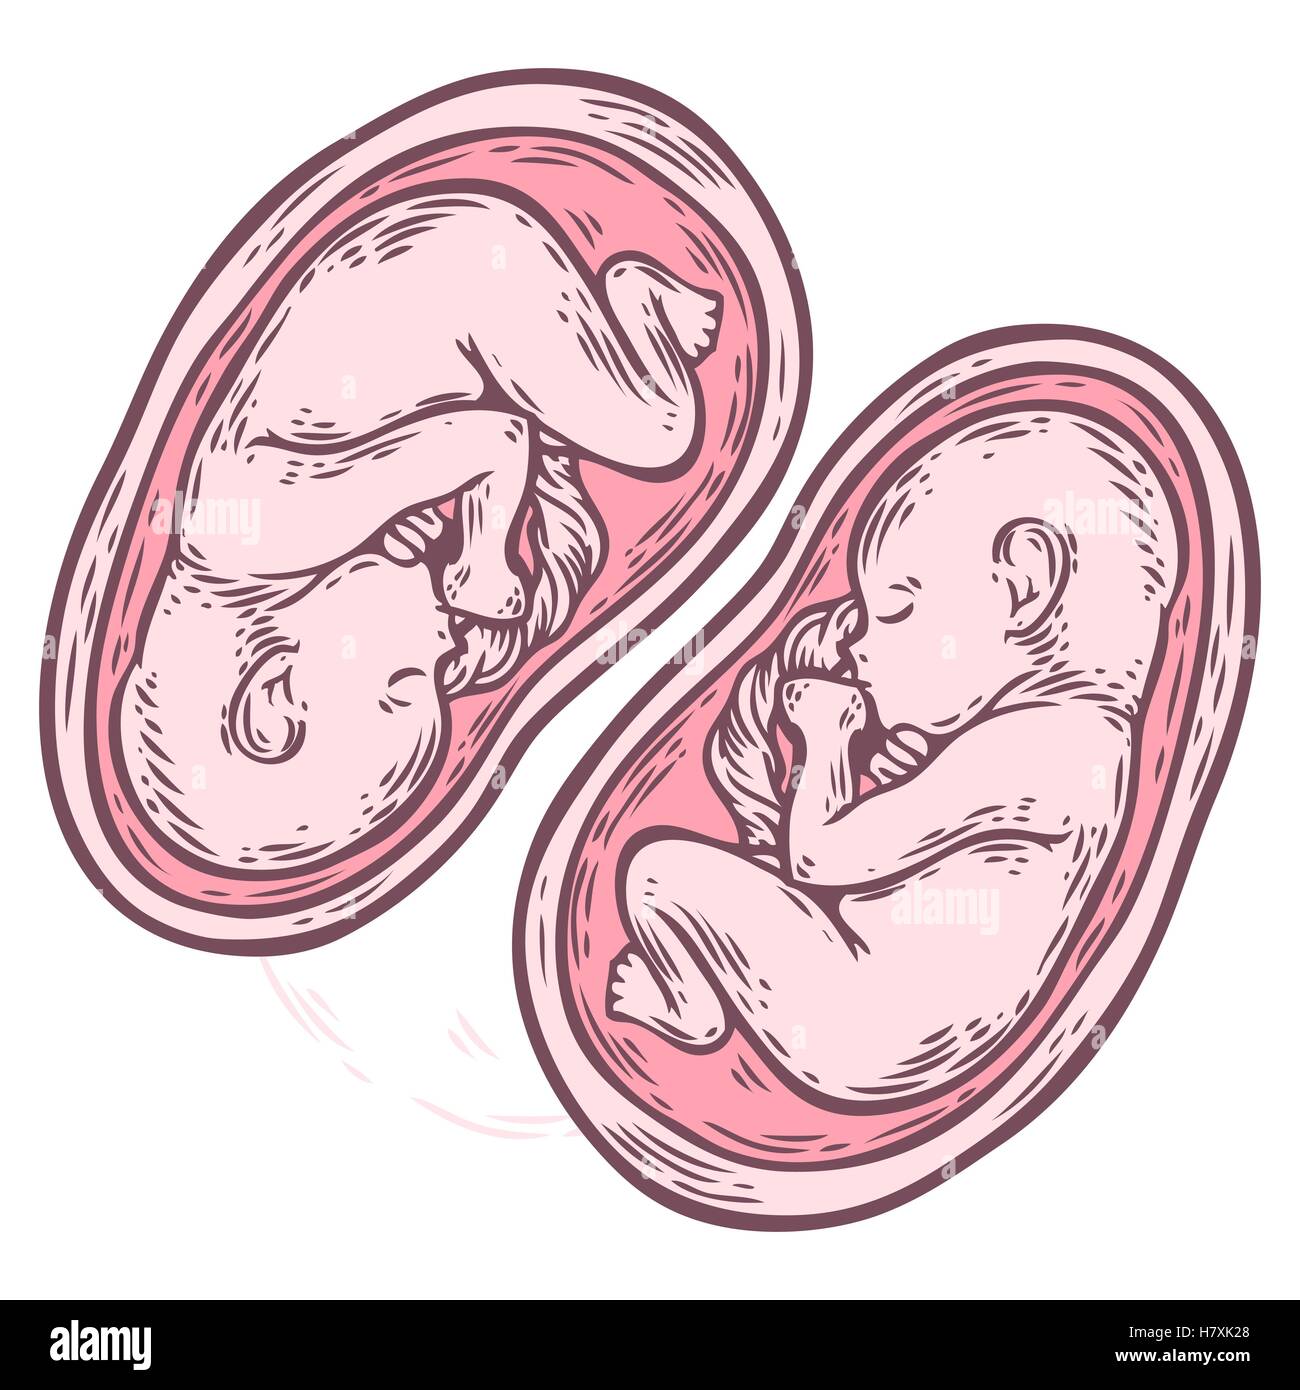 Les jumeaux foetus concept hand drawn vector illustration bébé en croissance prénatale, umbilicle épinière isolé sur un fond blanc. Illustration de Vecteur